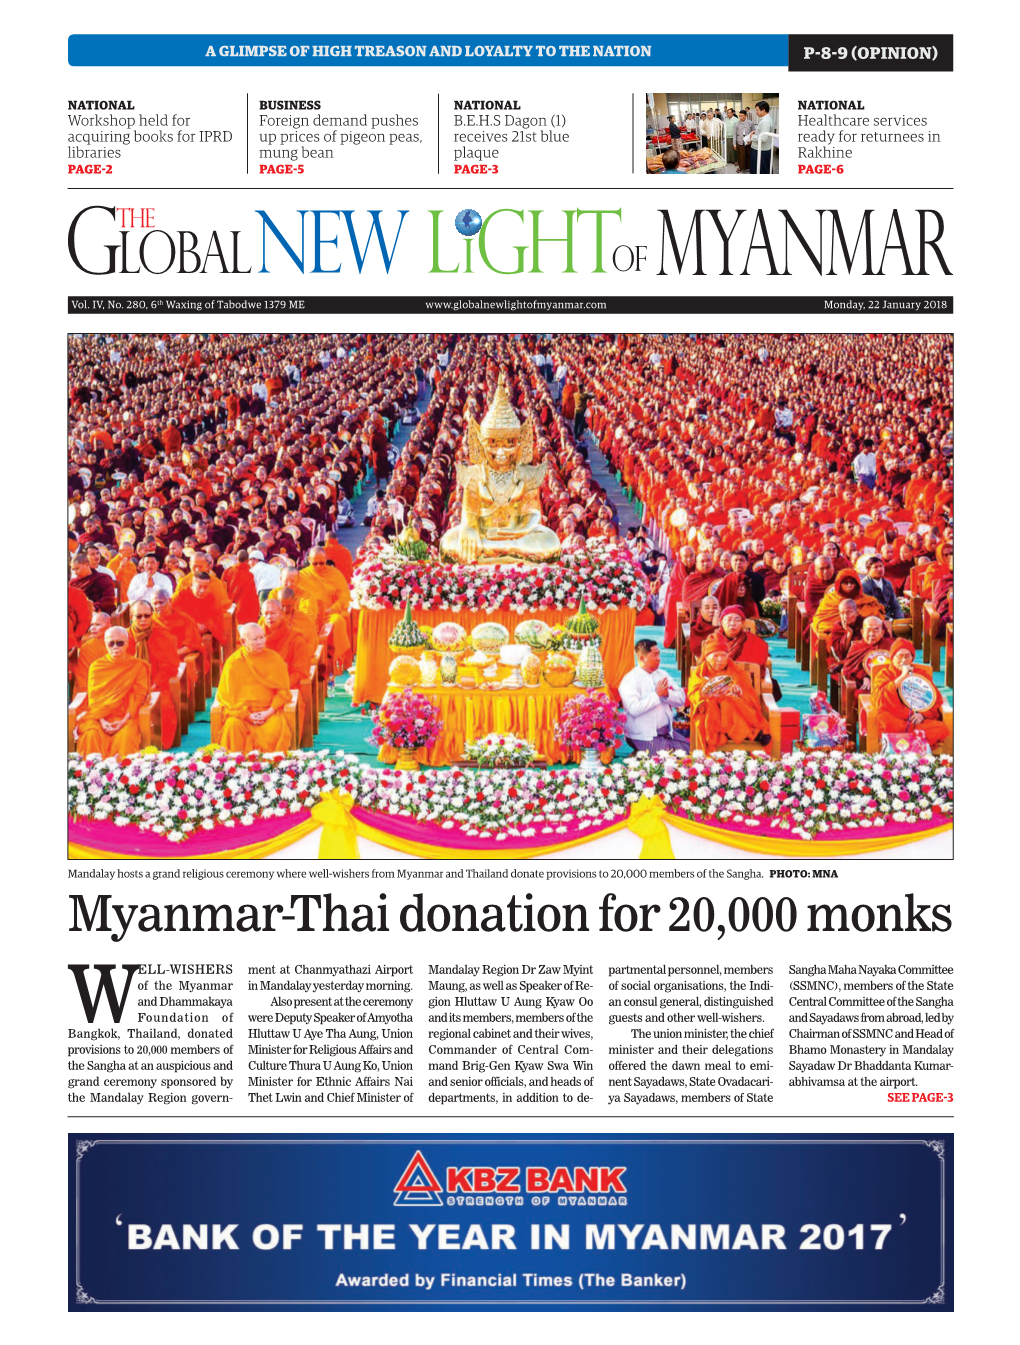 Myanmar-Thai Donation for 20,000 Monks